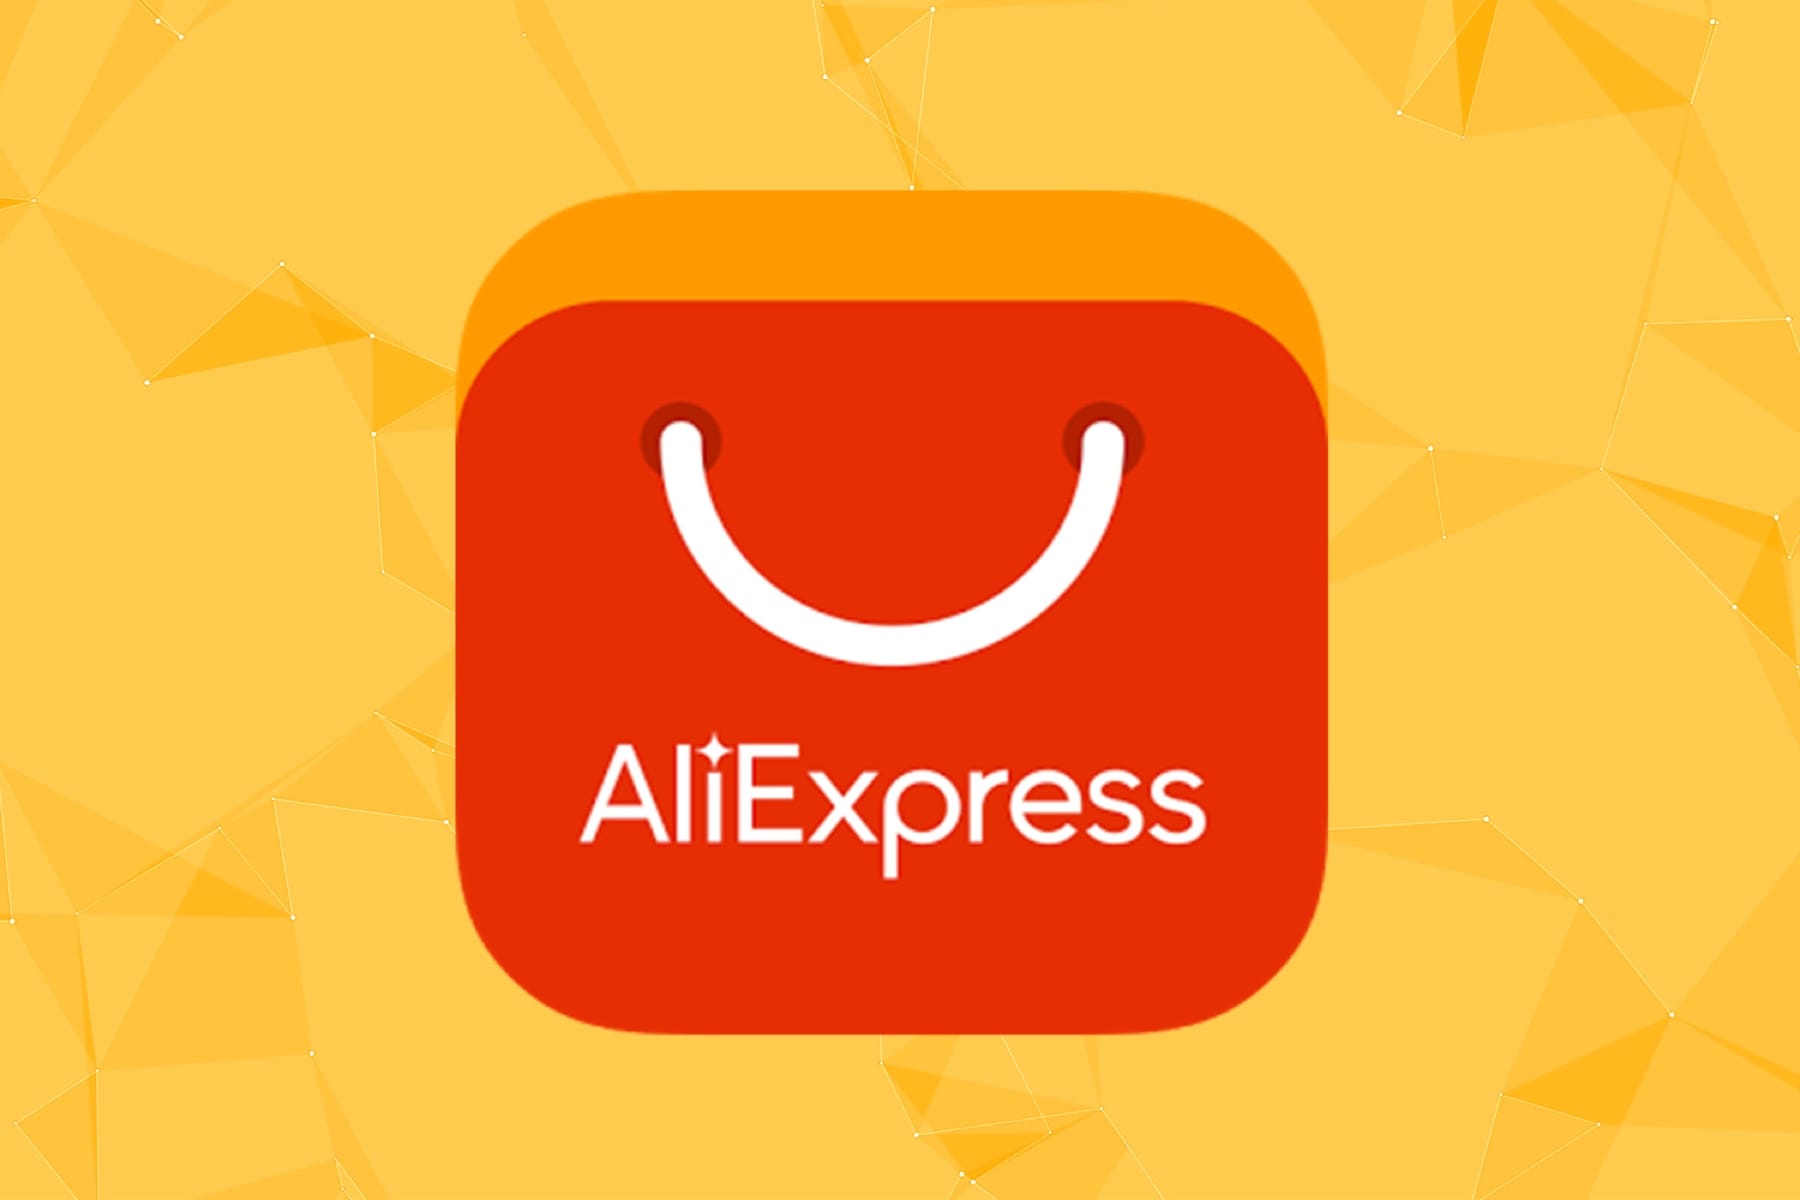 Užitočné odkazy na AliExpress